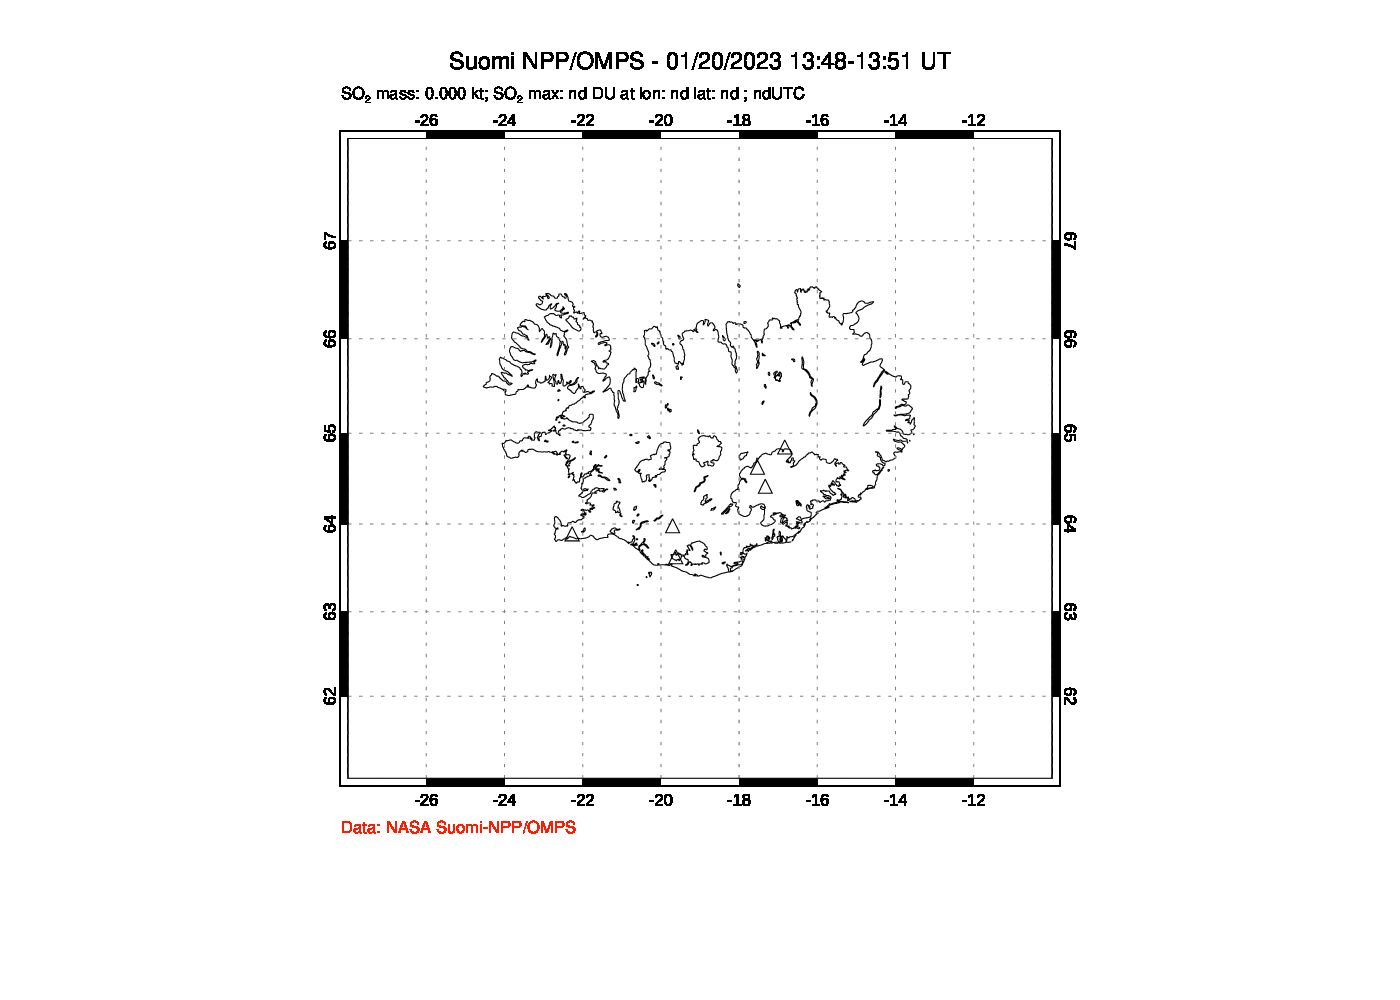 A sulfur dioxide image over Iceland on Jan 20, 2023.